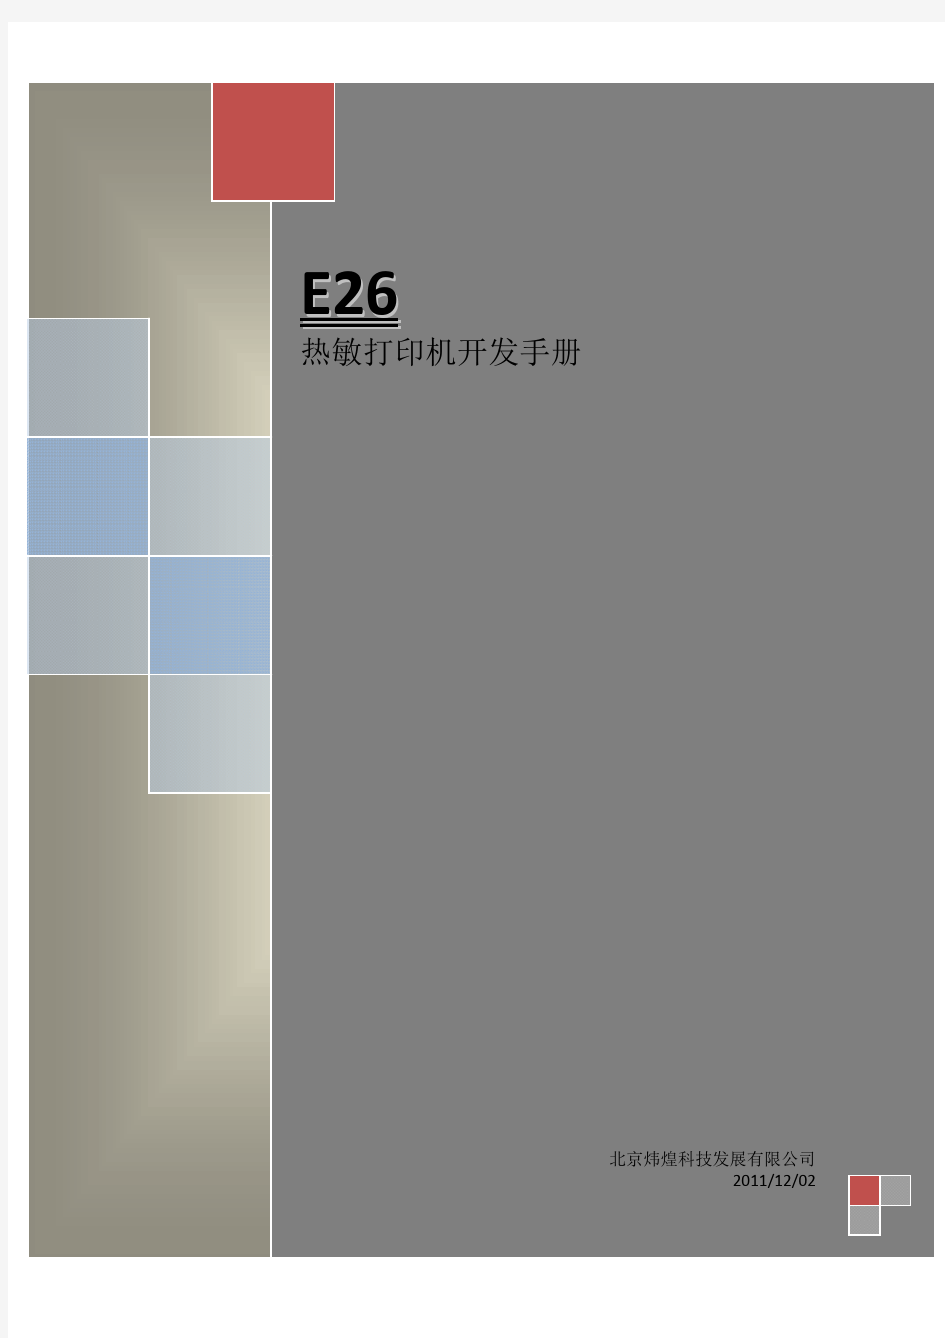 E26热敏打印机开发手册